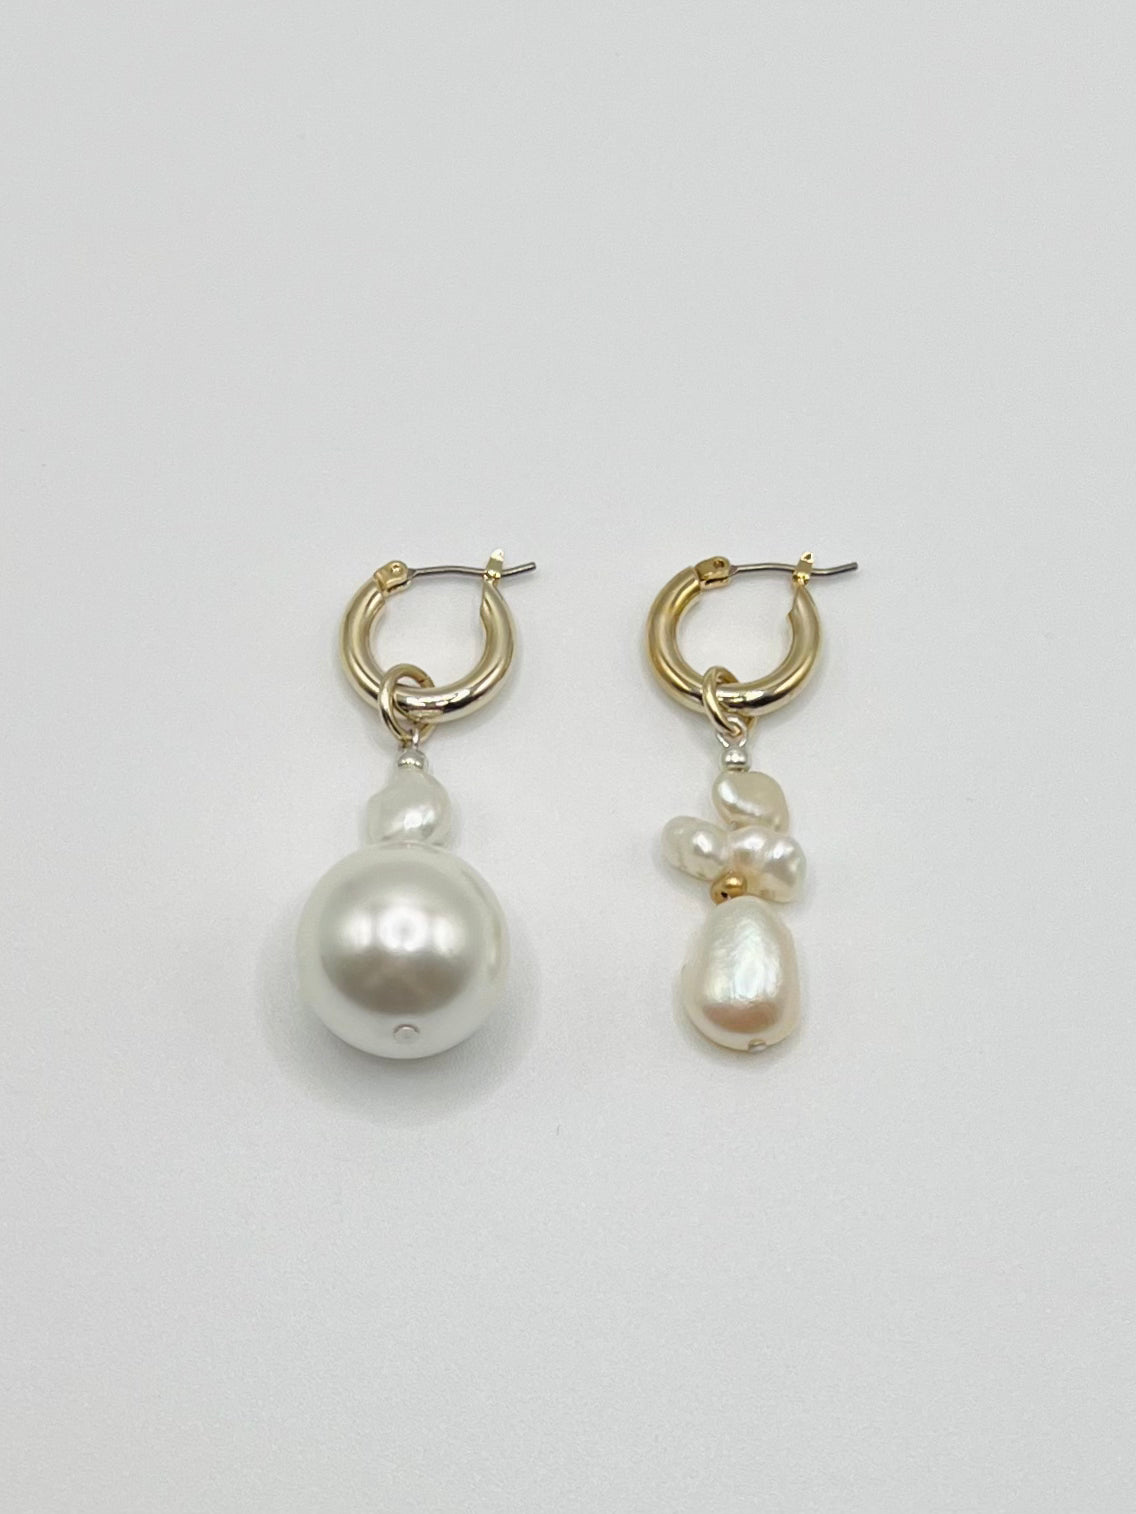 Pearl mix pierce